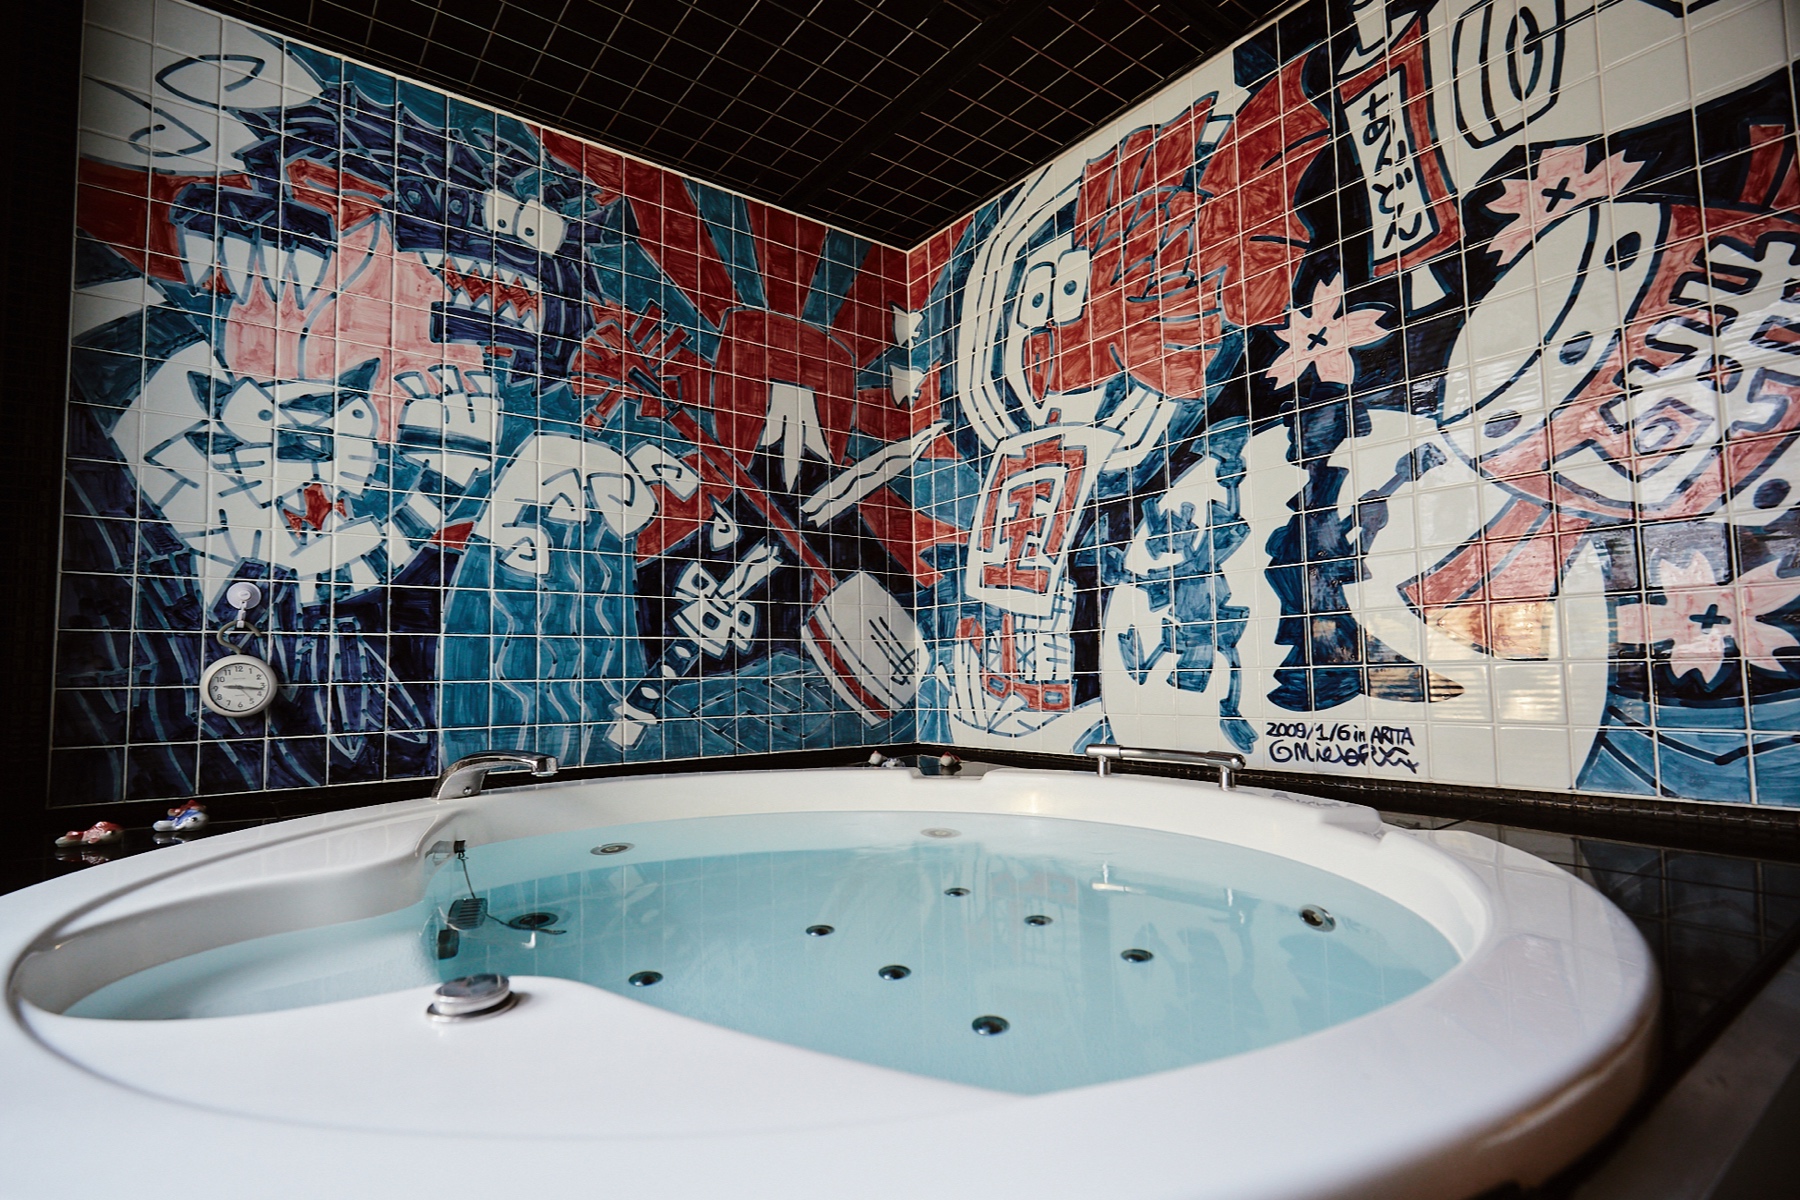 「行燈旅館」酒店提供獨特的按摩浴缸體驗